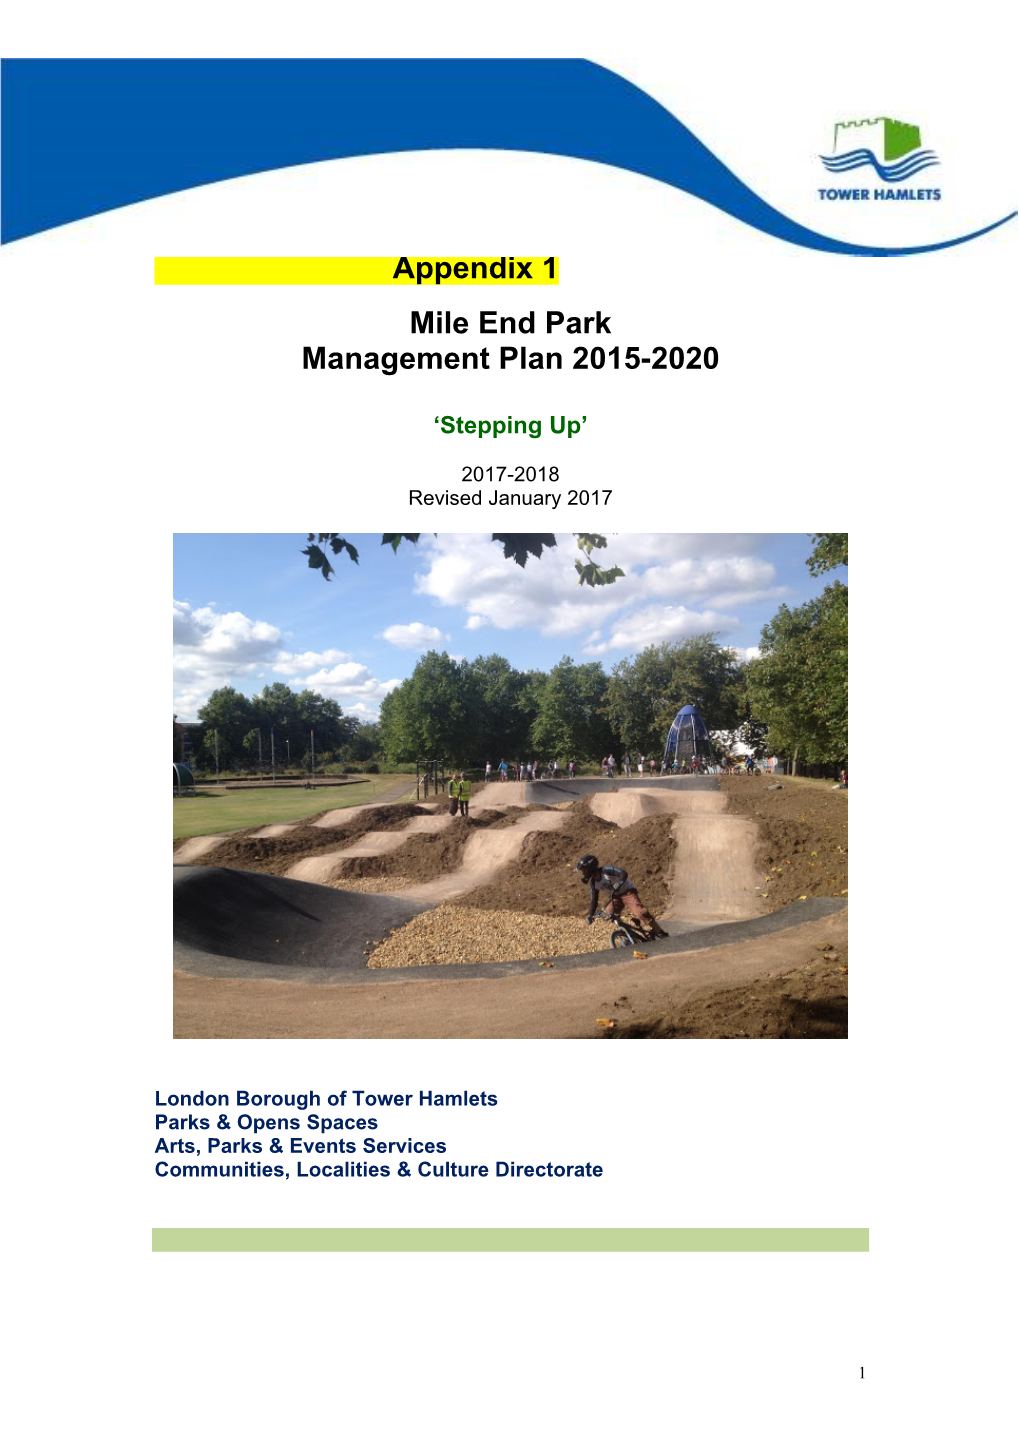 Append Appendix 1 Mile End Park Management Plan 2015-2020